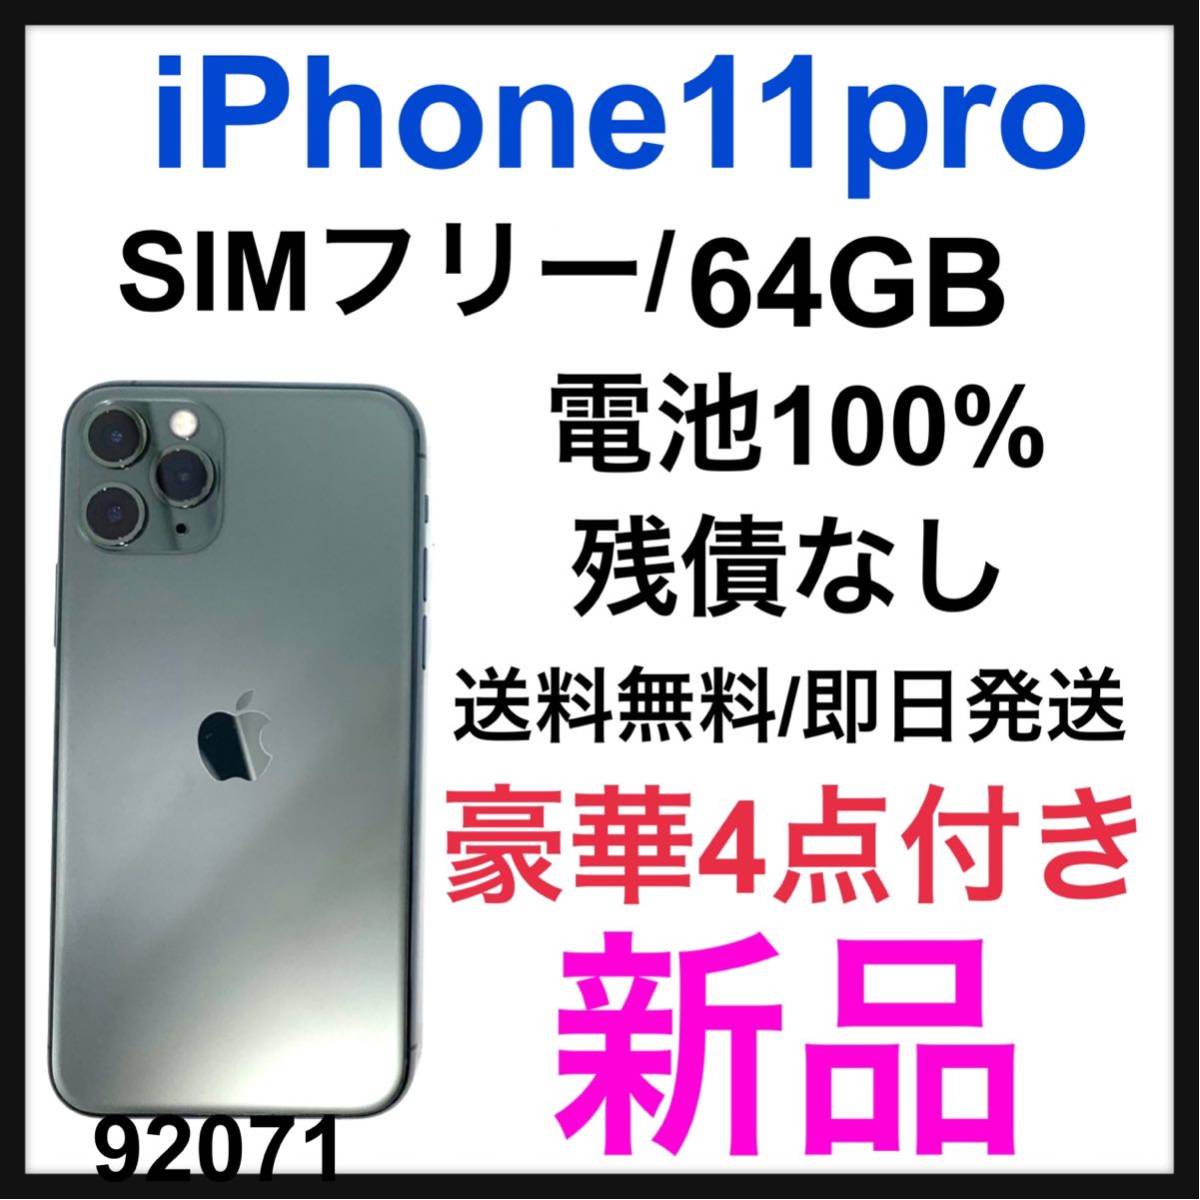 スペシャルオファ iPhone 8 Plus Silver 64GB SIMフリー 前面ガラス 